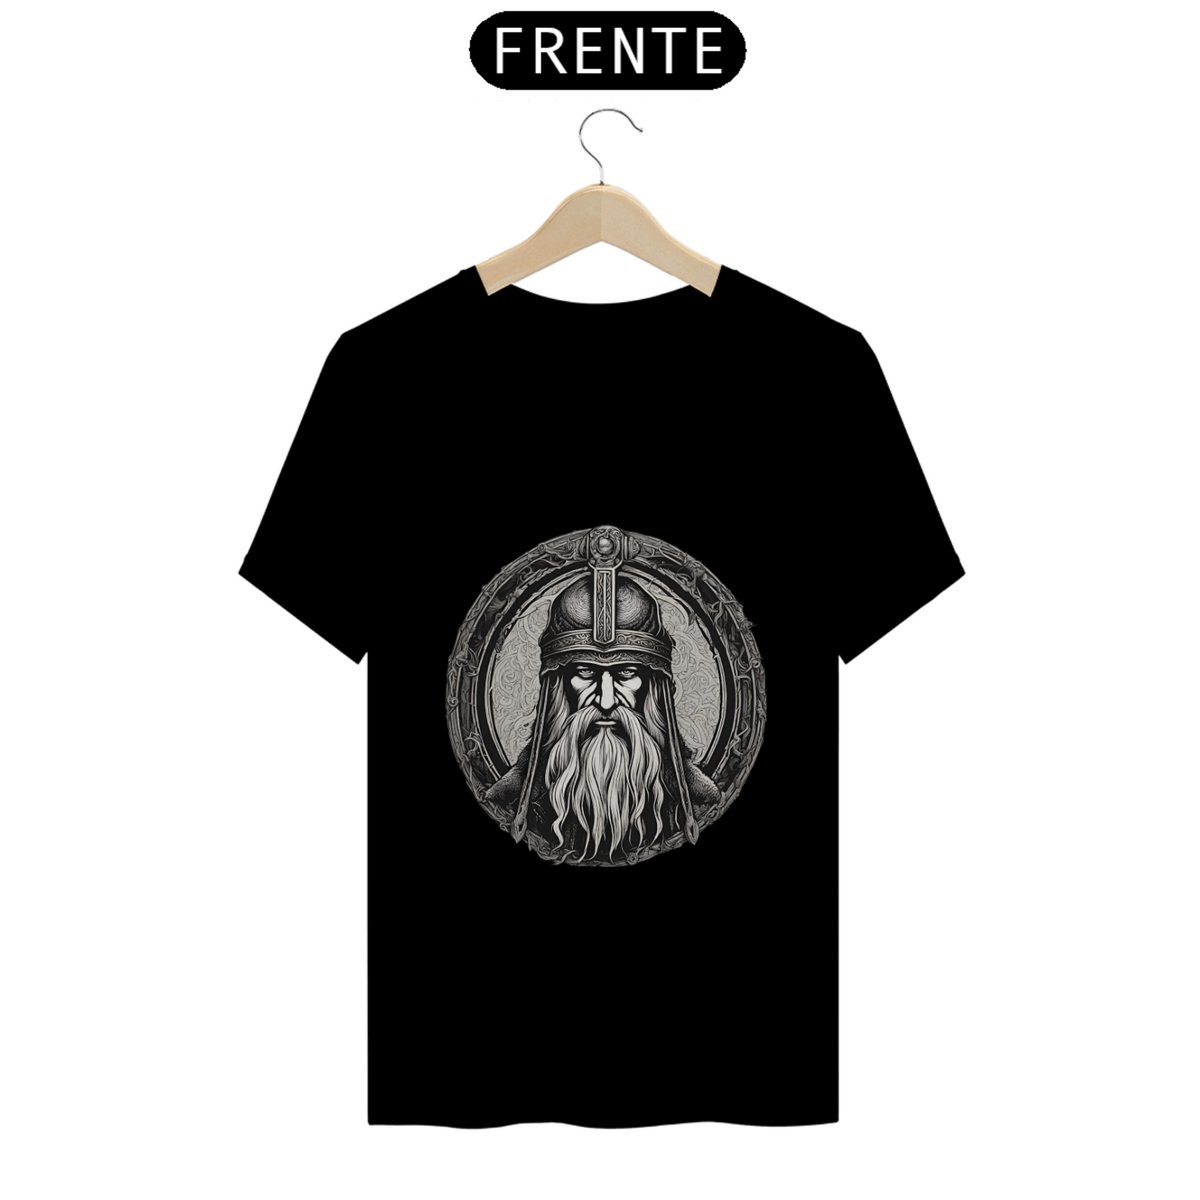 Nome do produto: T-shirt Nórdicos- Odin